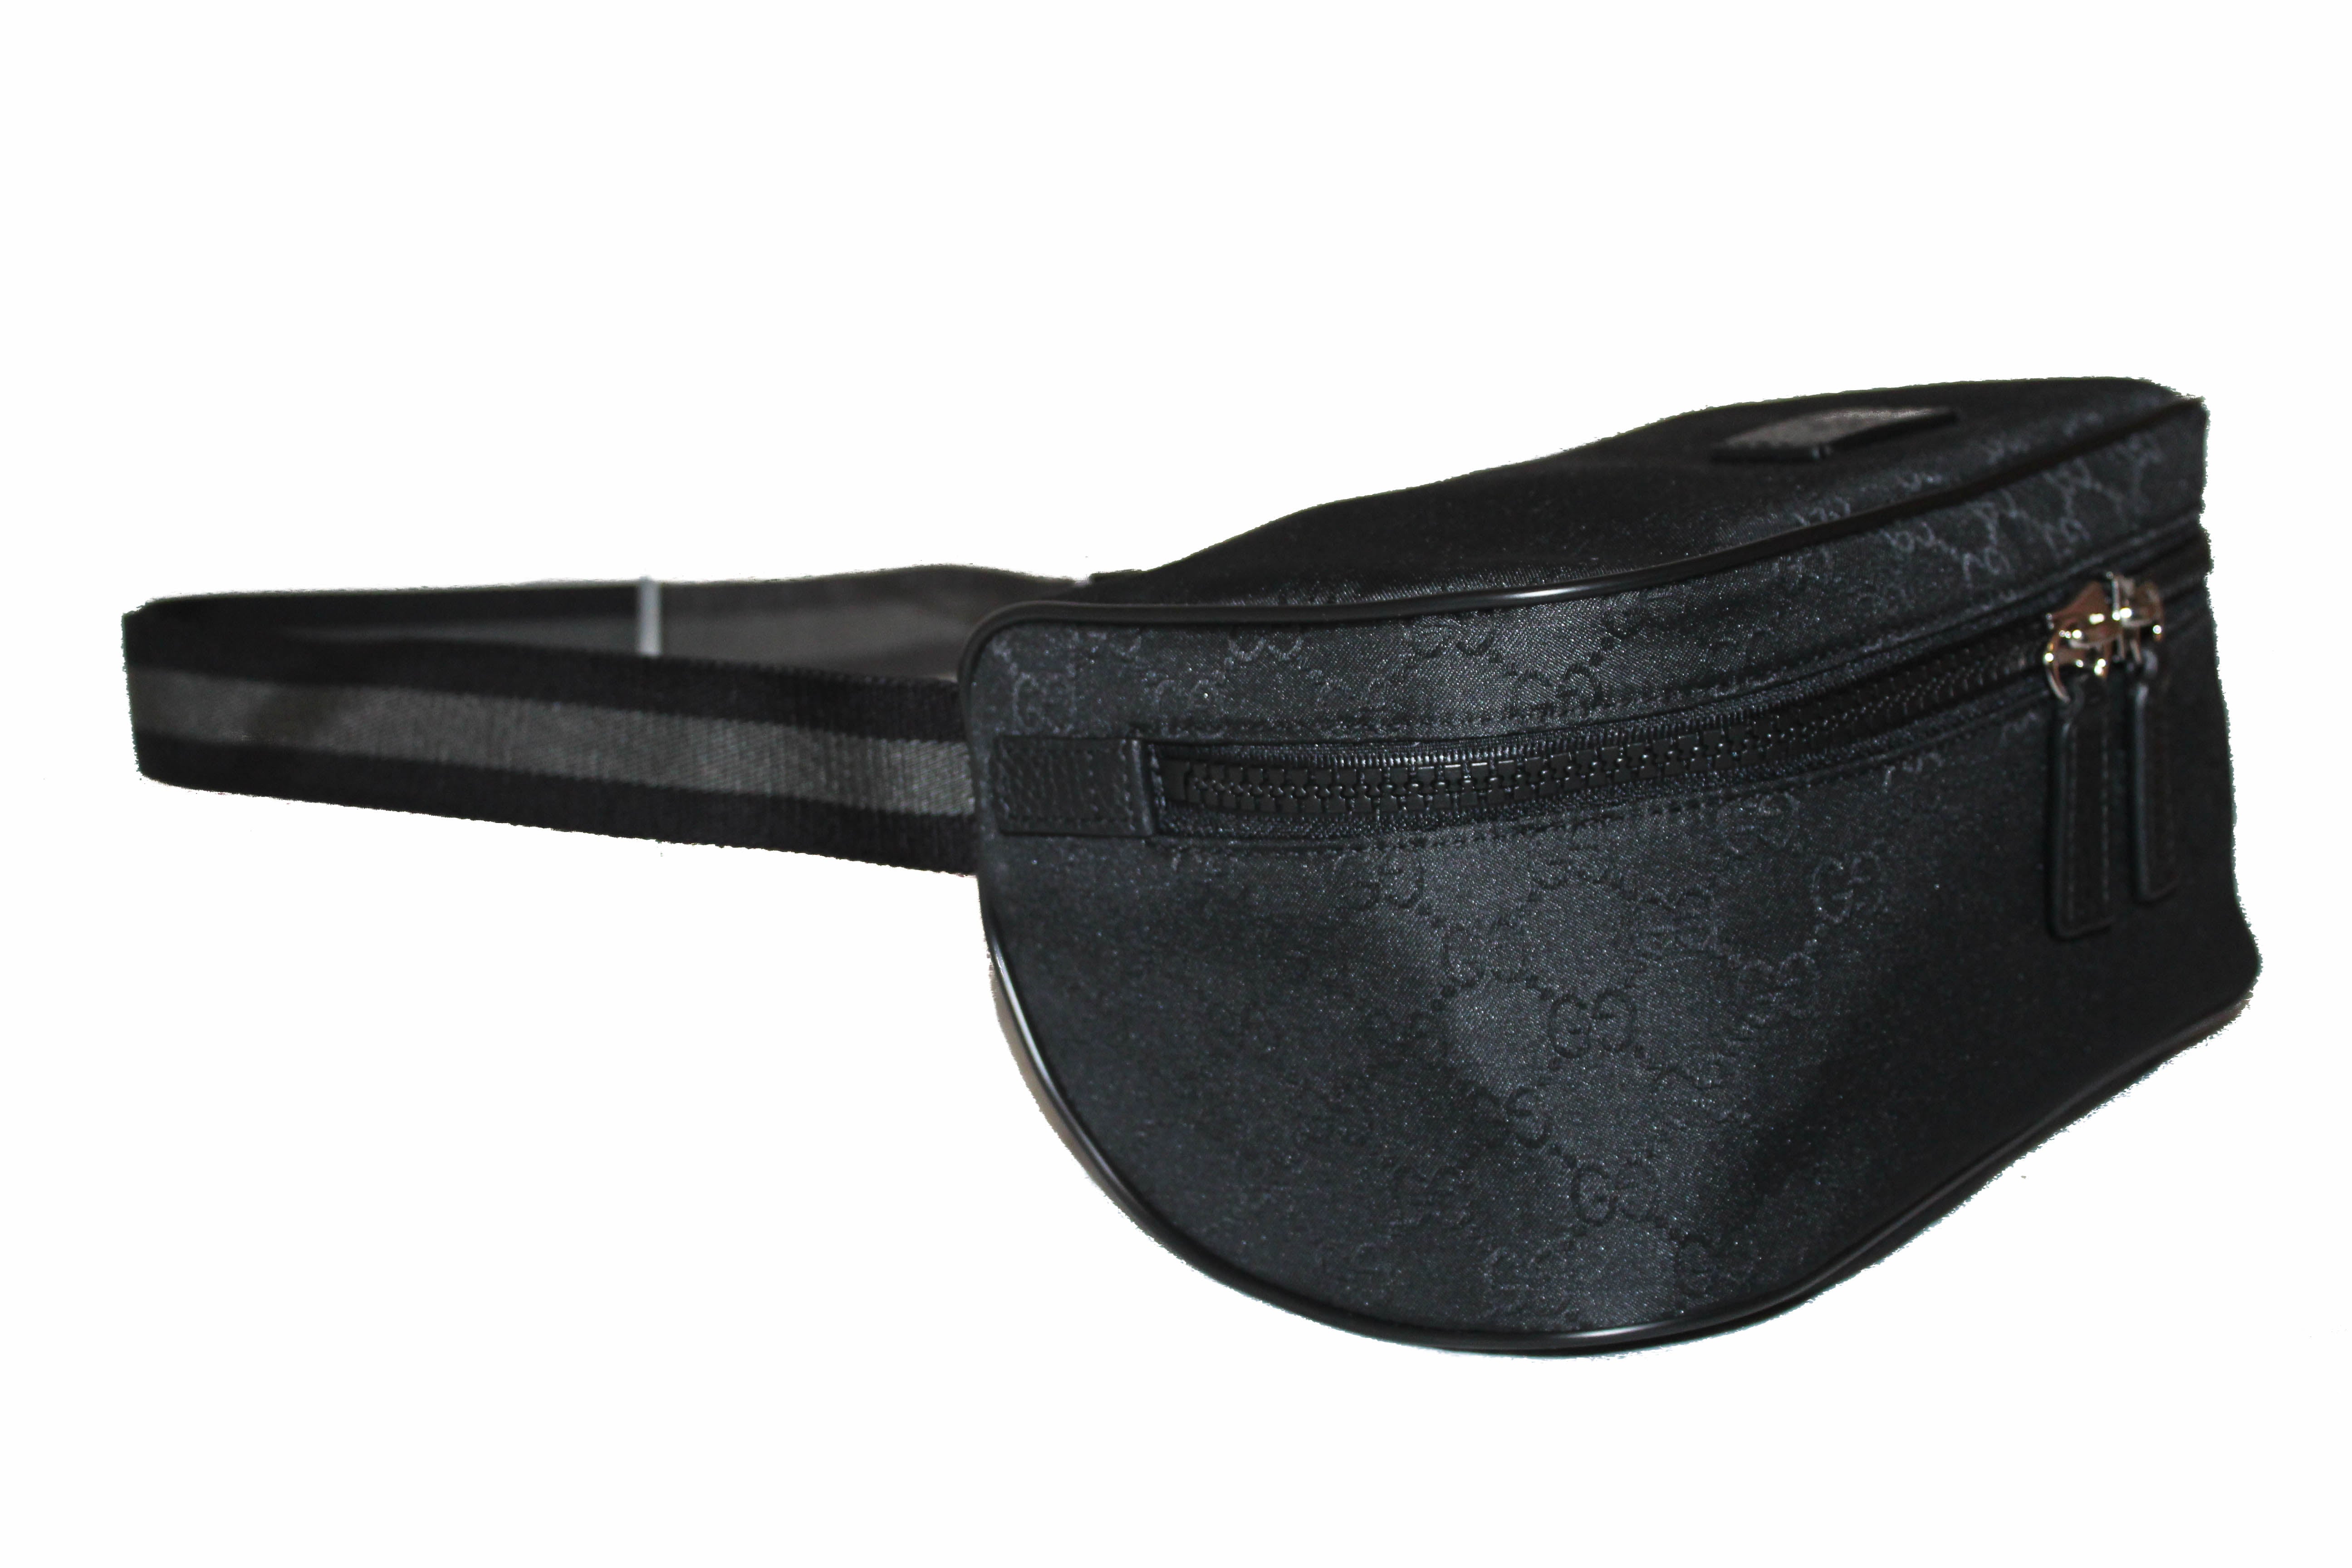 GUCCI GG Canvas Waist Pouch Shoulder Bum Bag Belt Bag Black Leather